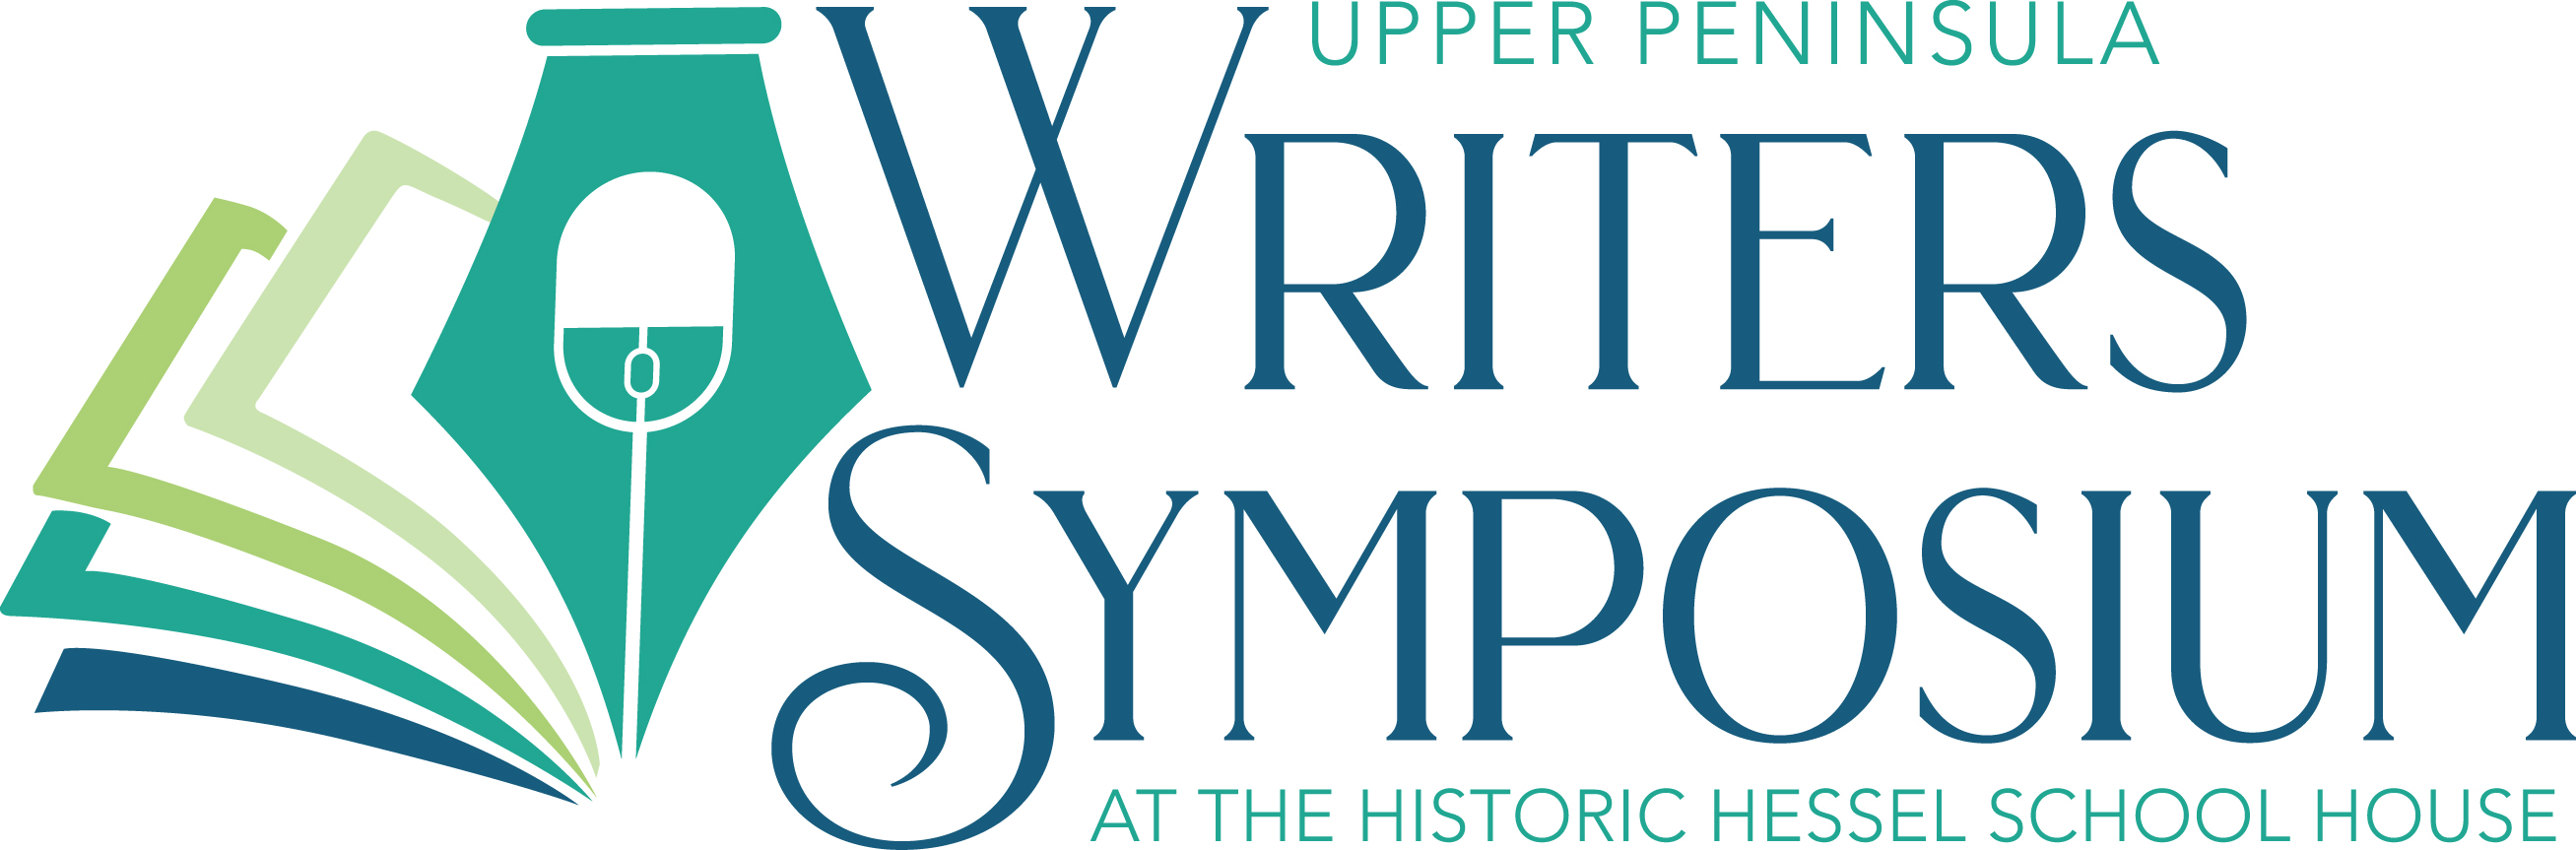 Upper Peninsula Writer's Symposium cover image